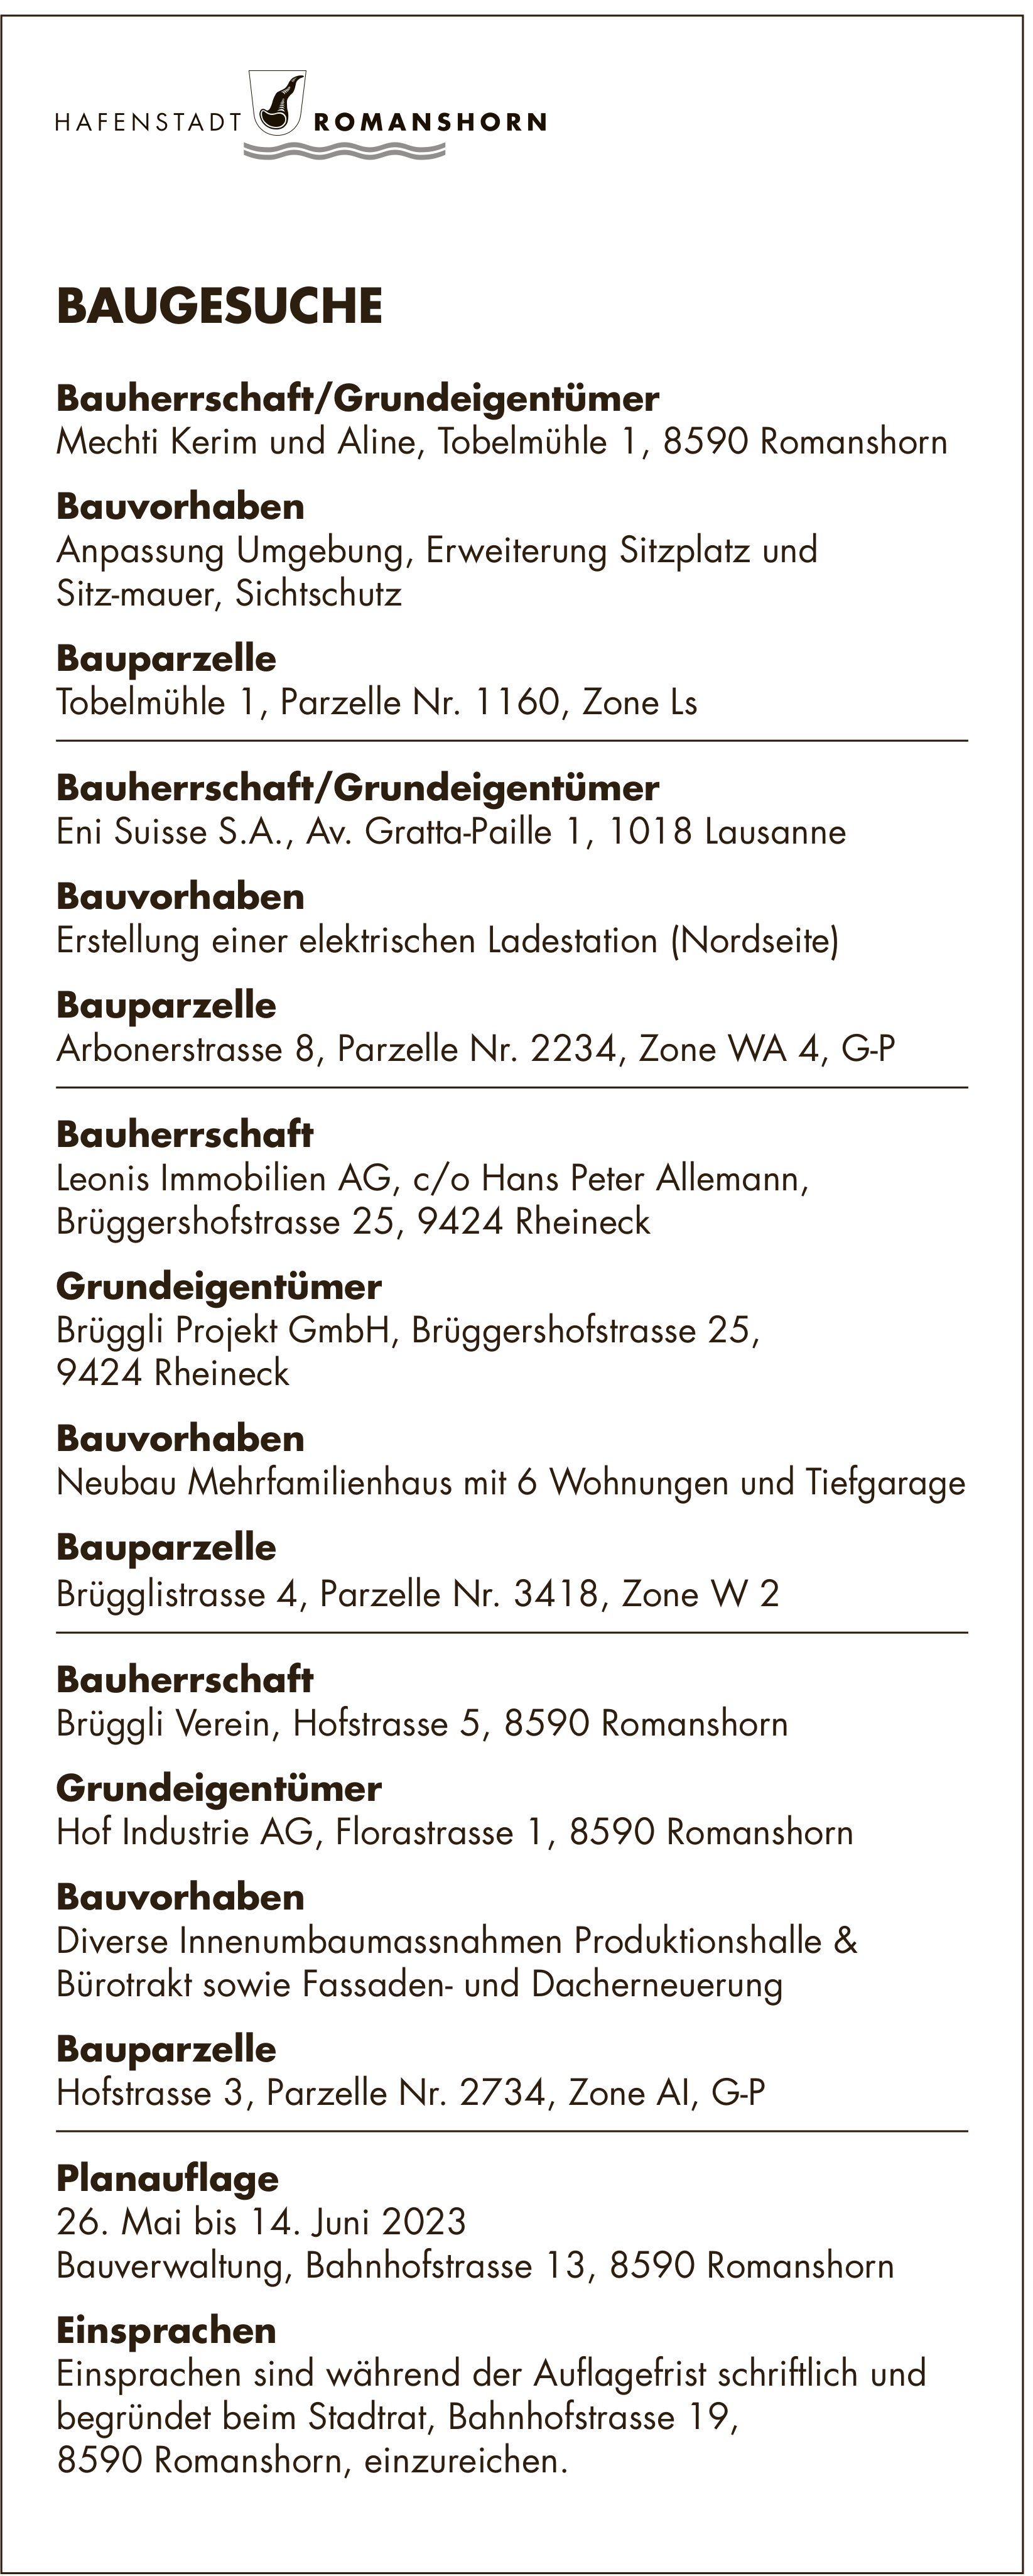 Baugesuche vom 26. Mai 2023, Rheineck - Eni Suisse SA, Bauherrschaft/Grundeigentümer